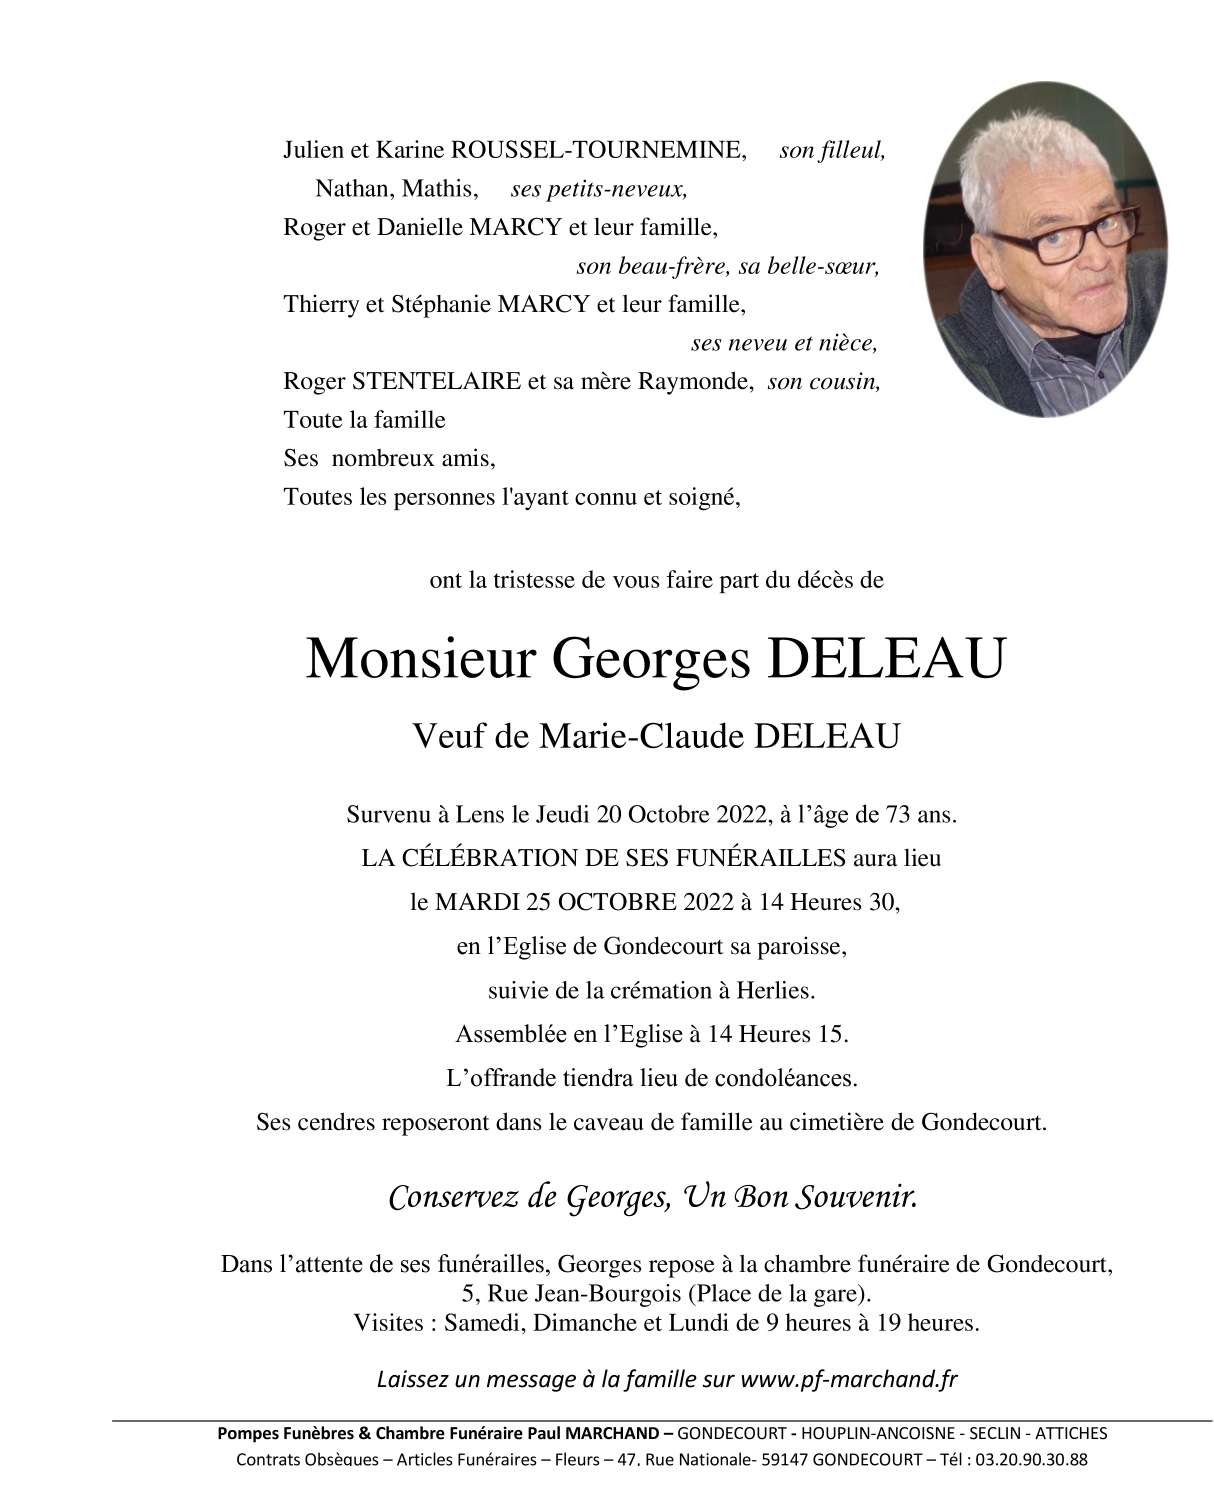 Death of Monsieur Georges DELEAU (20/10/2022), Pour voir le faire